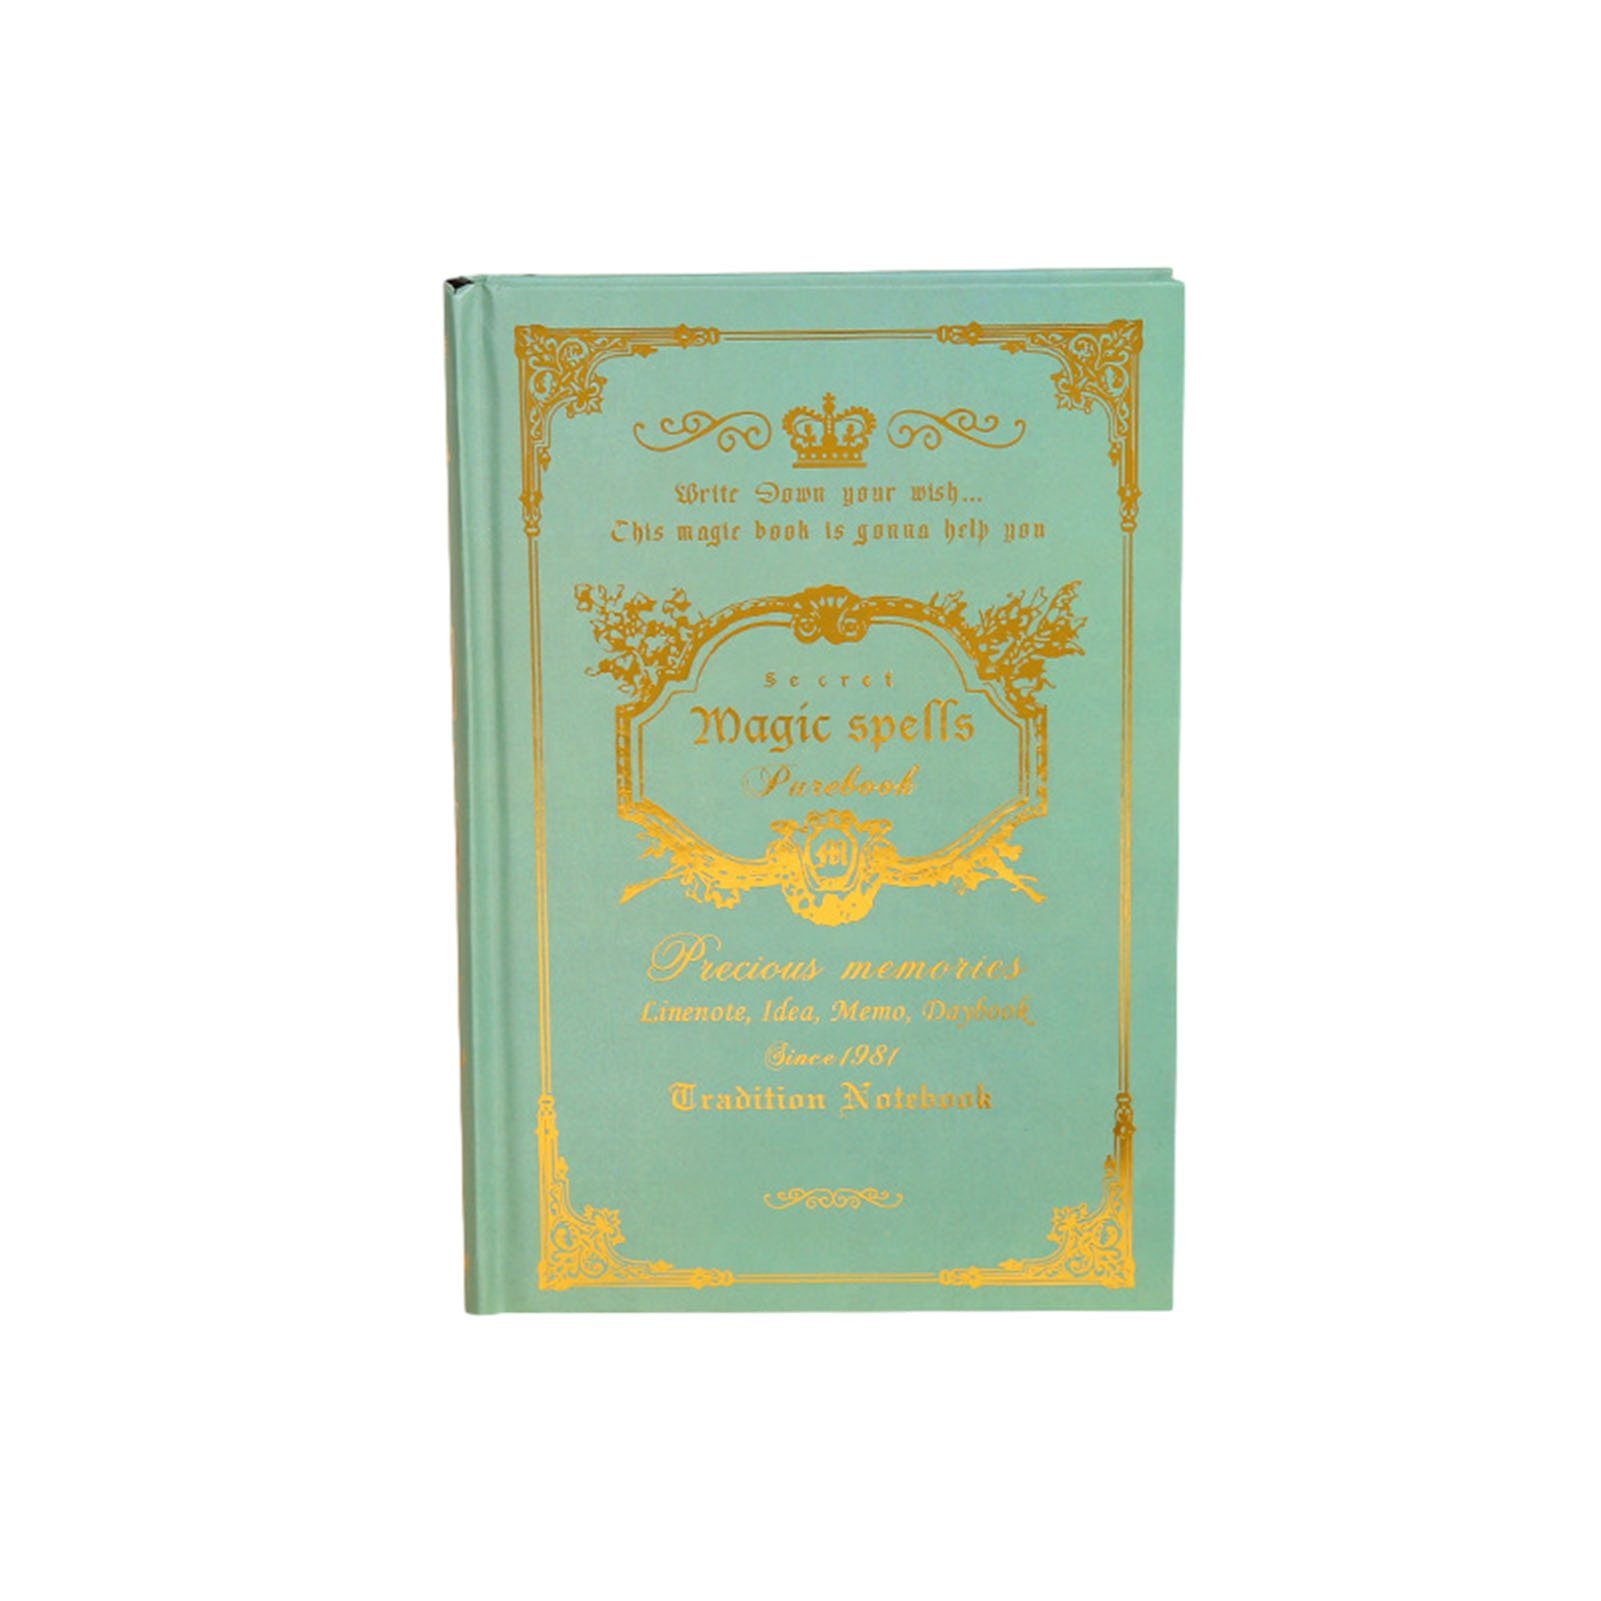 Blusmart Notizbuch A5-Notizbuch Im Vintage-Stil Für Studenten, Vielseitig Einsetzbar, Tagebuch green